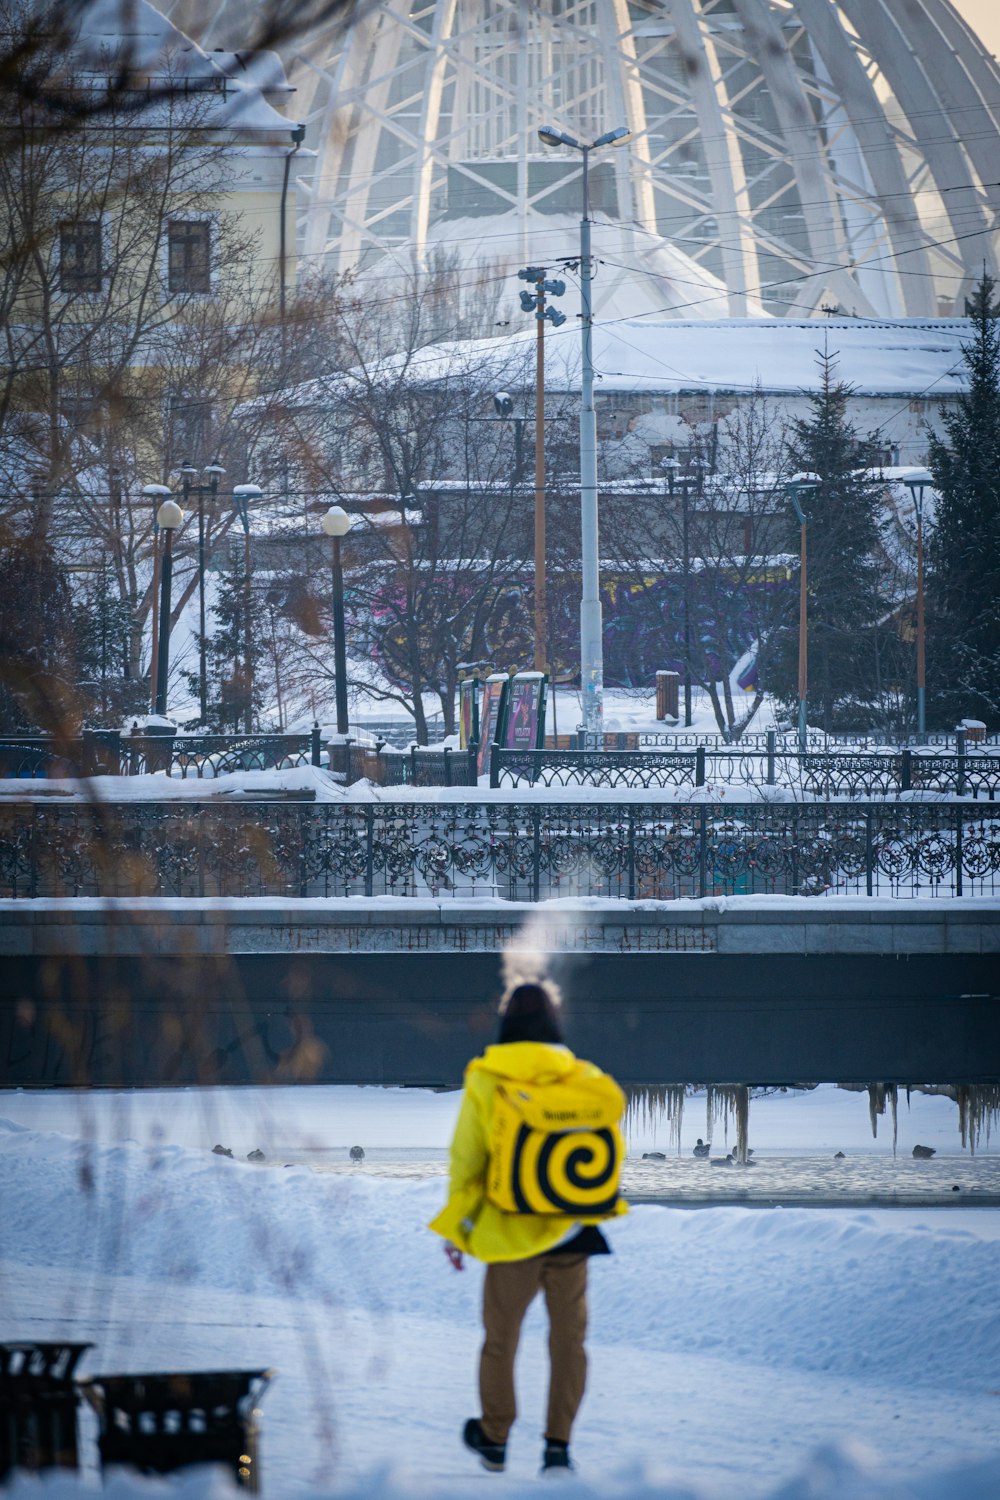 Eine Person in einer gelben Jacke, die im Schnee steht